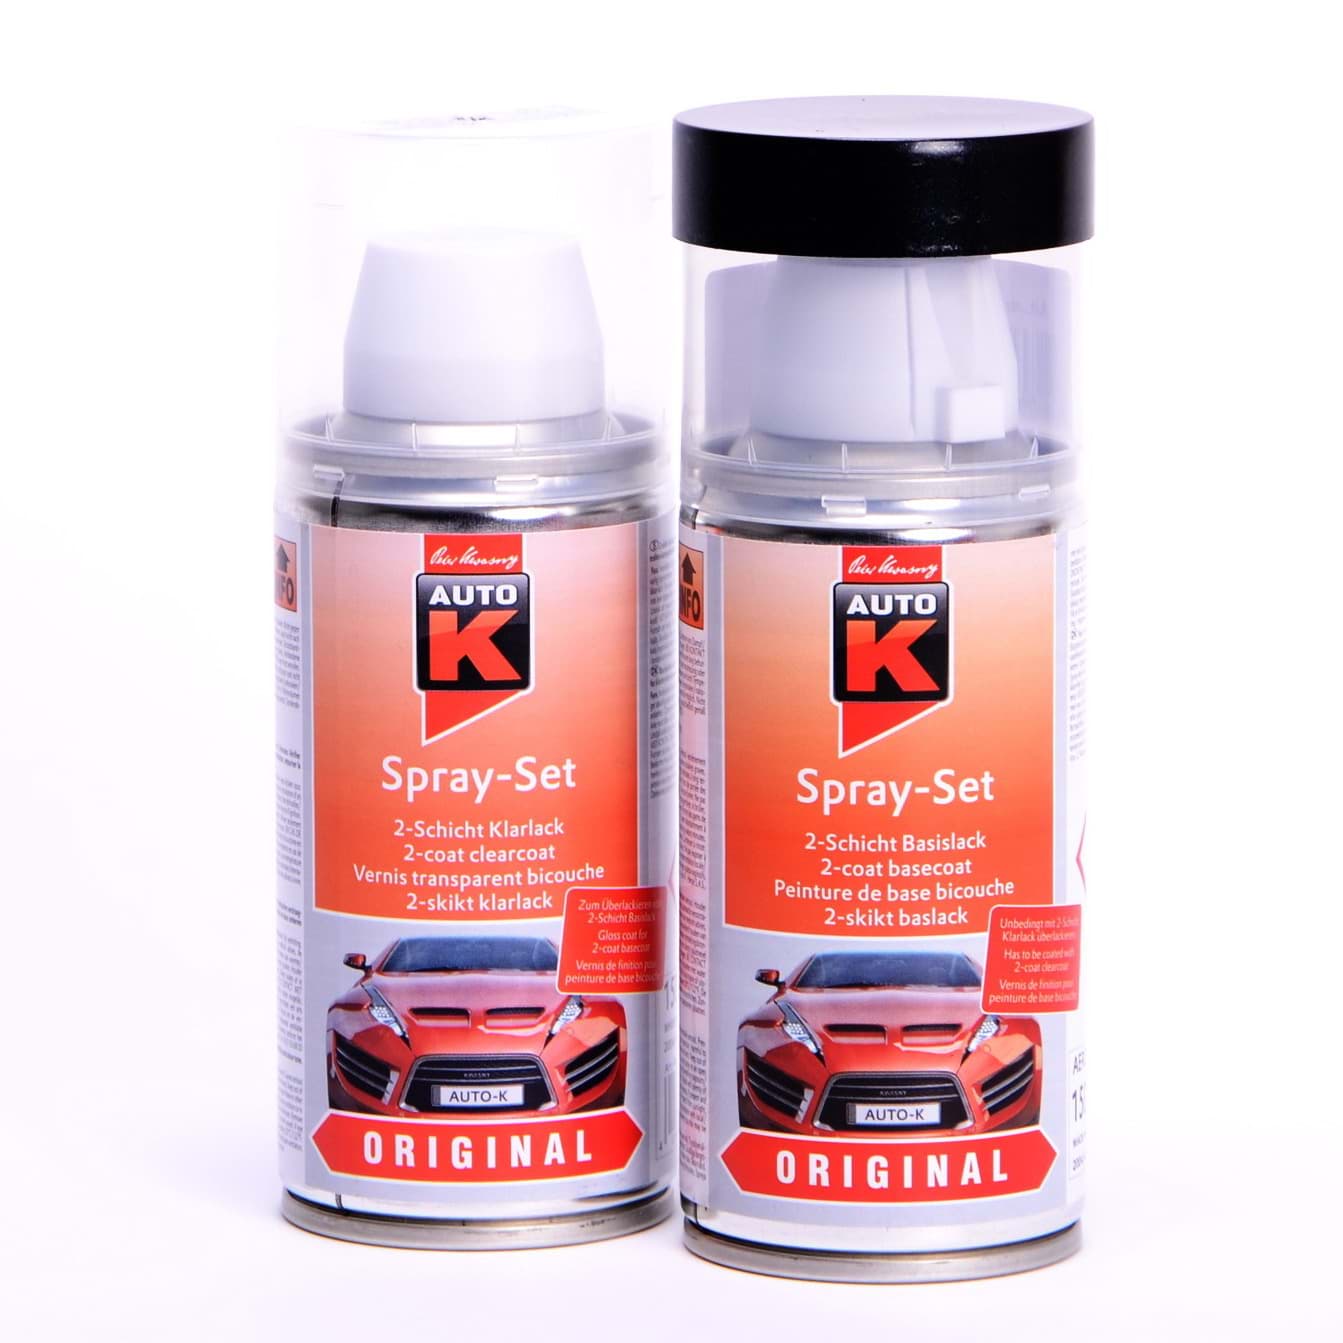 Afbeelding van Auto-K Spray-Set Autolack für BMW 138 Zinnoberrot 27221